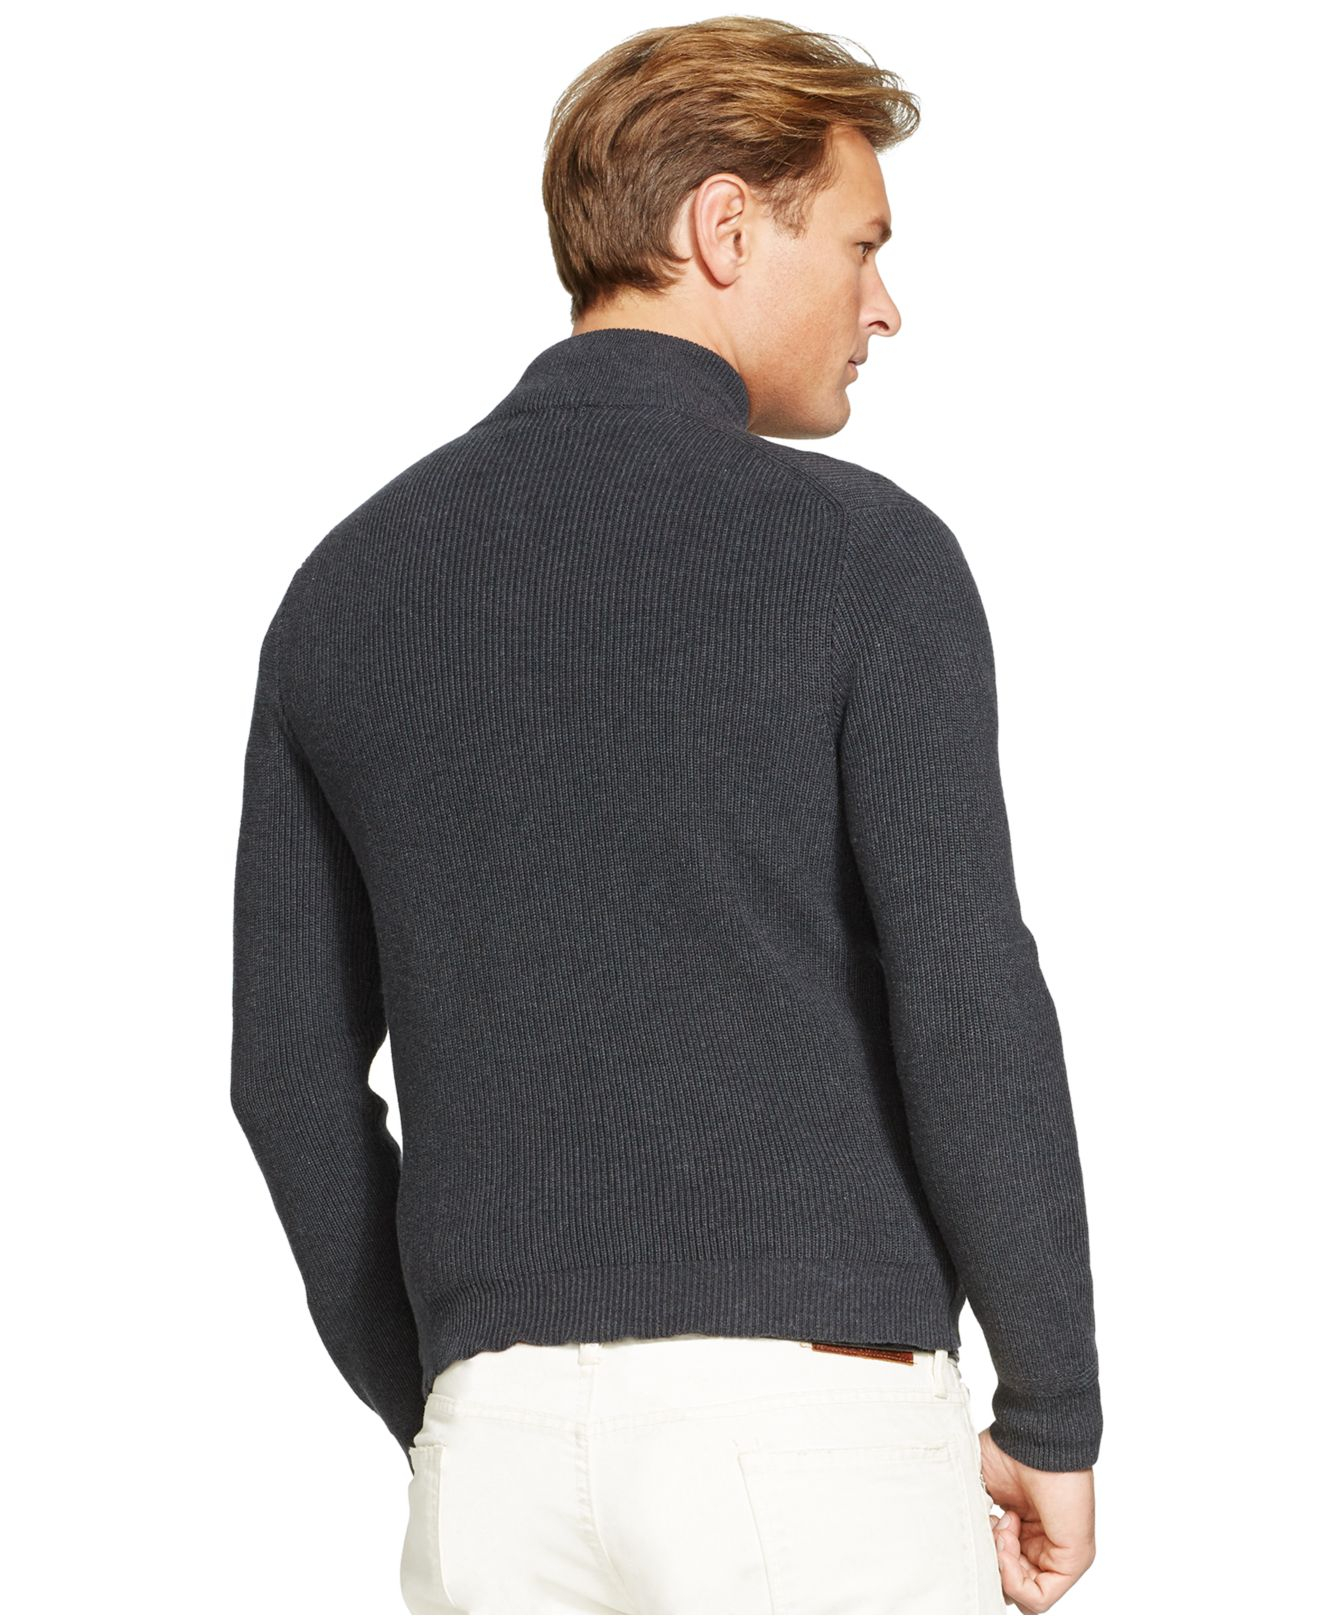 Lyst - Polo ralph lauren Full-Zip Cotton Sweater in Gray for Men